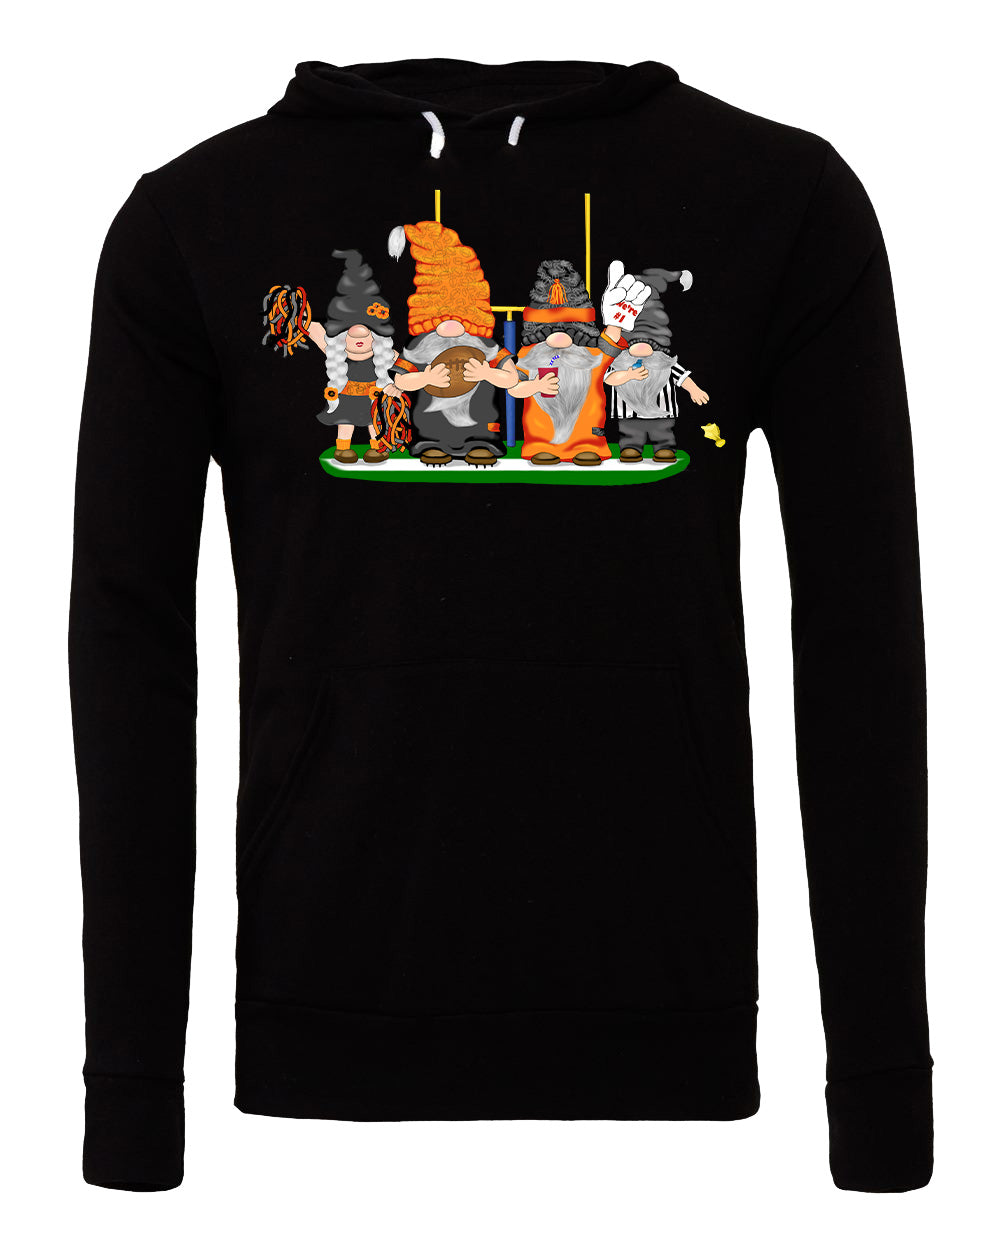 Black & Orange Football Gnomes (similar to Cincinnati) on Unisex Hoodie